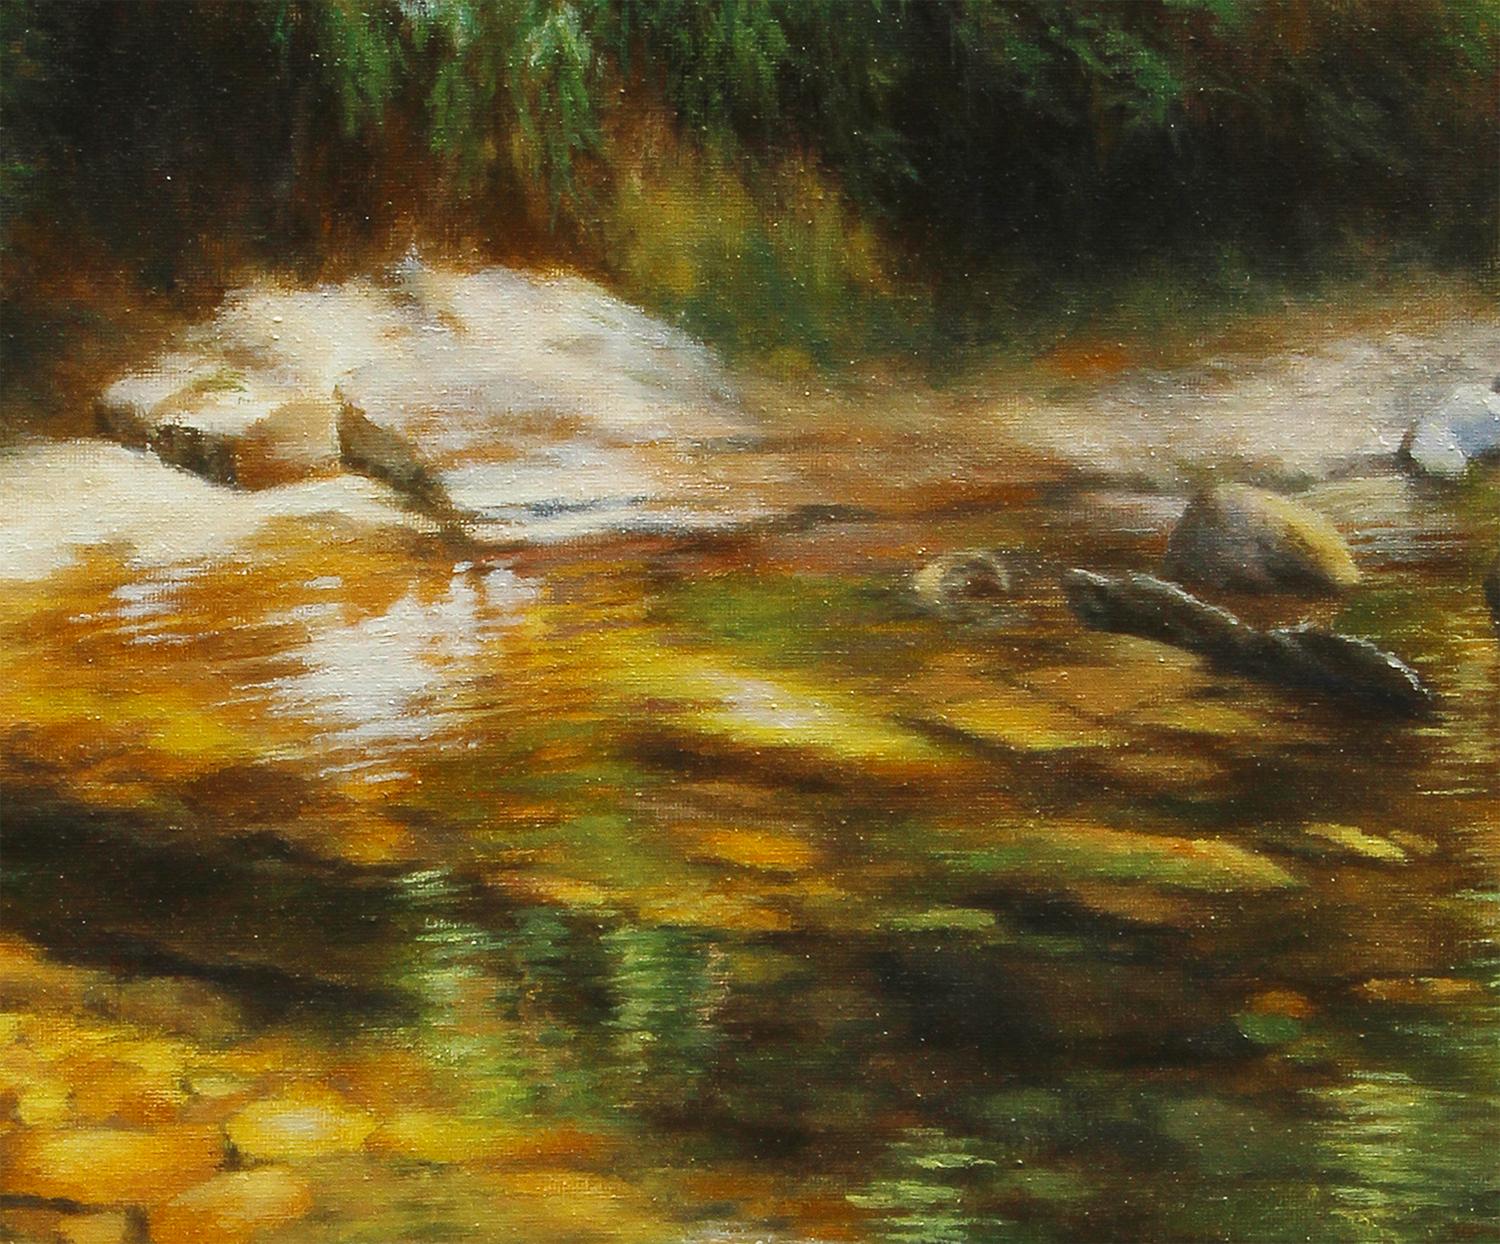 <p>Kommentare des Künstlers<br>Der Künstler Jo Galang malt einen ruhigen Fluss inmitten des Waldes. 